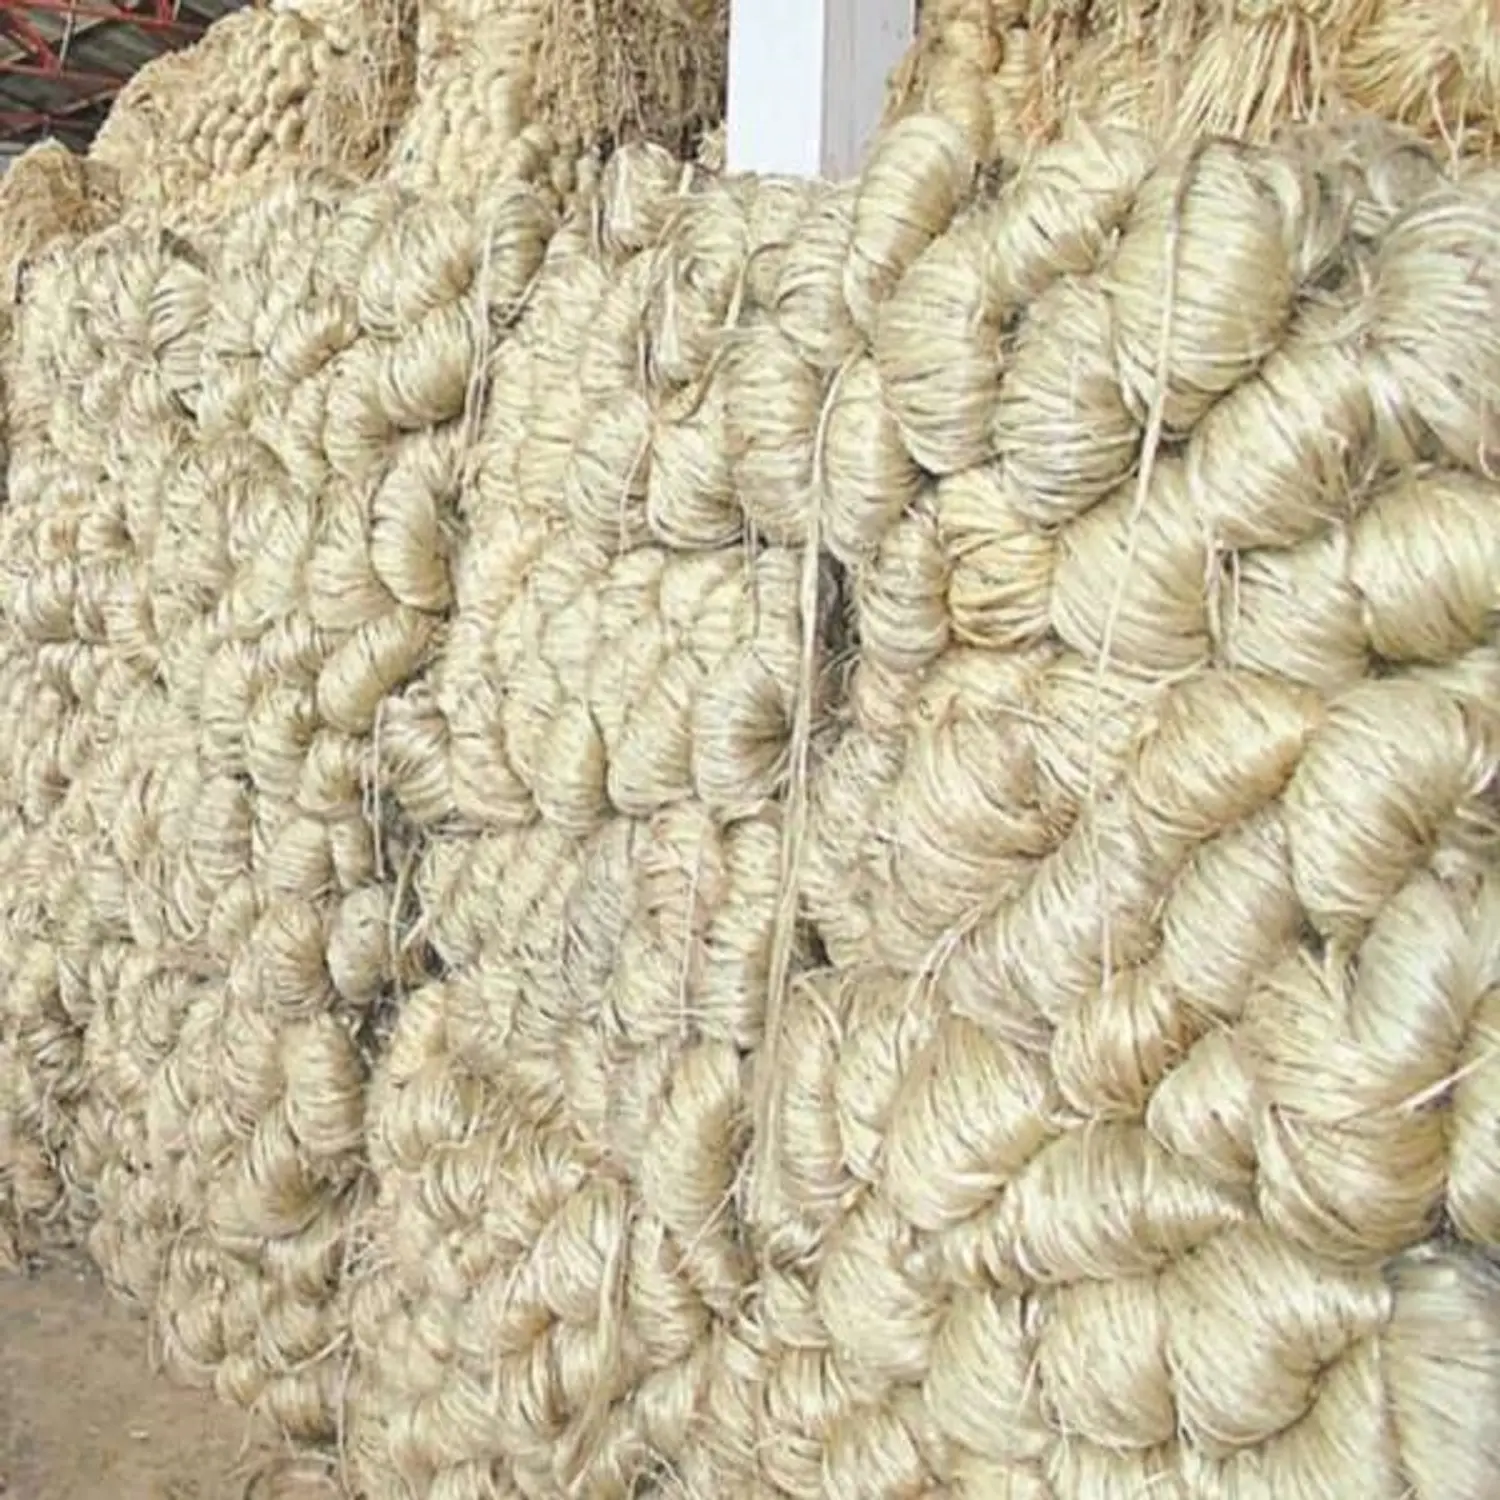 Fibra materiale in fibra fibra di Sisal per prodotti in Sisal e uso industriale all'ingrosso 100-120cm tutti i gradi di alta qualità